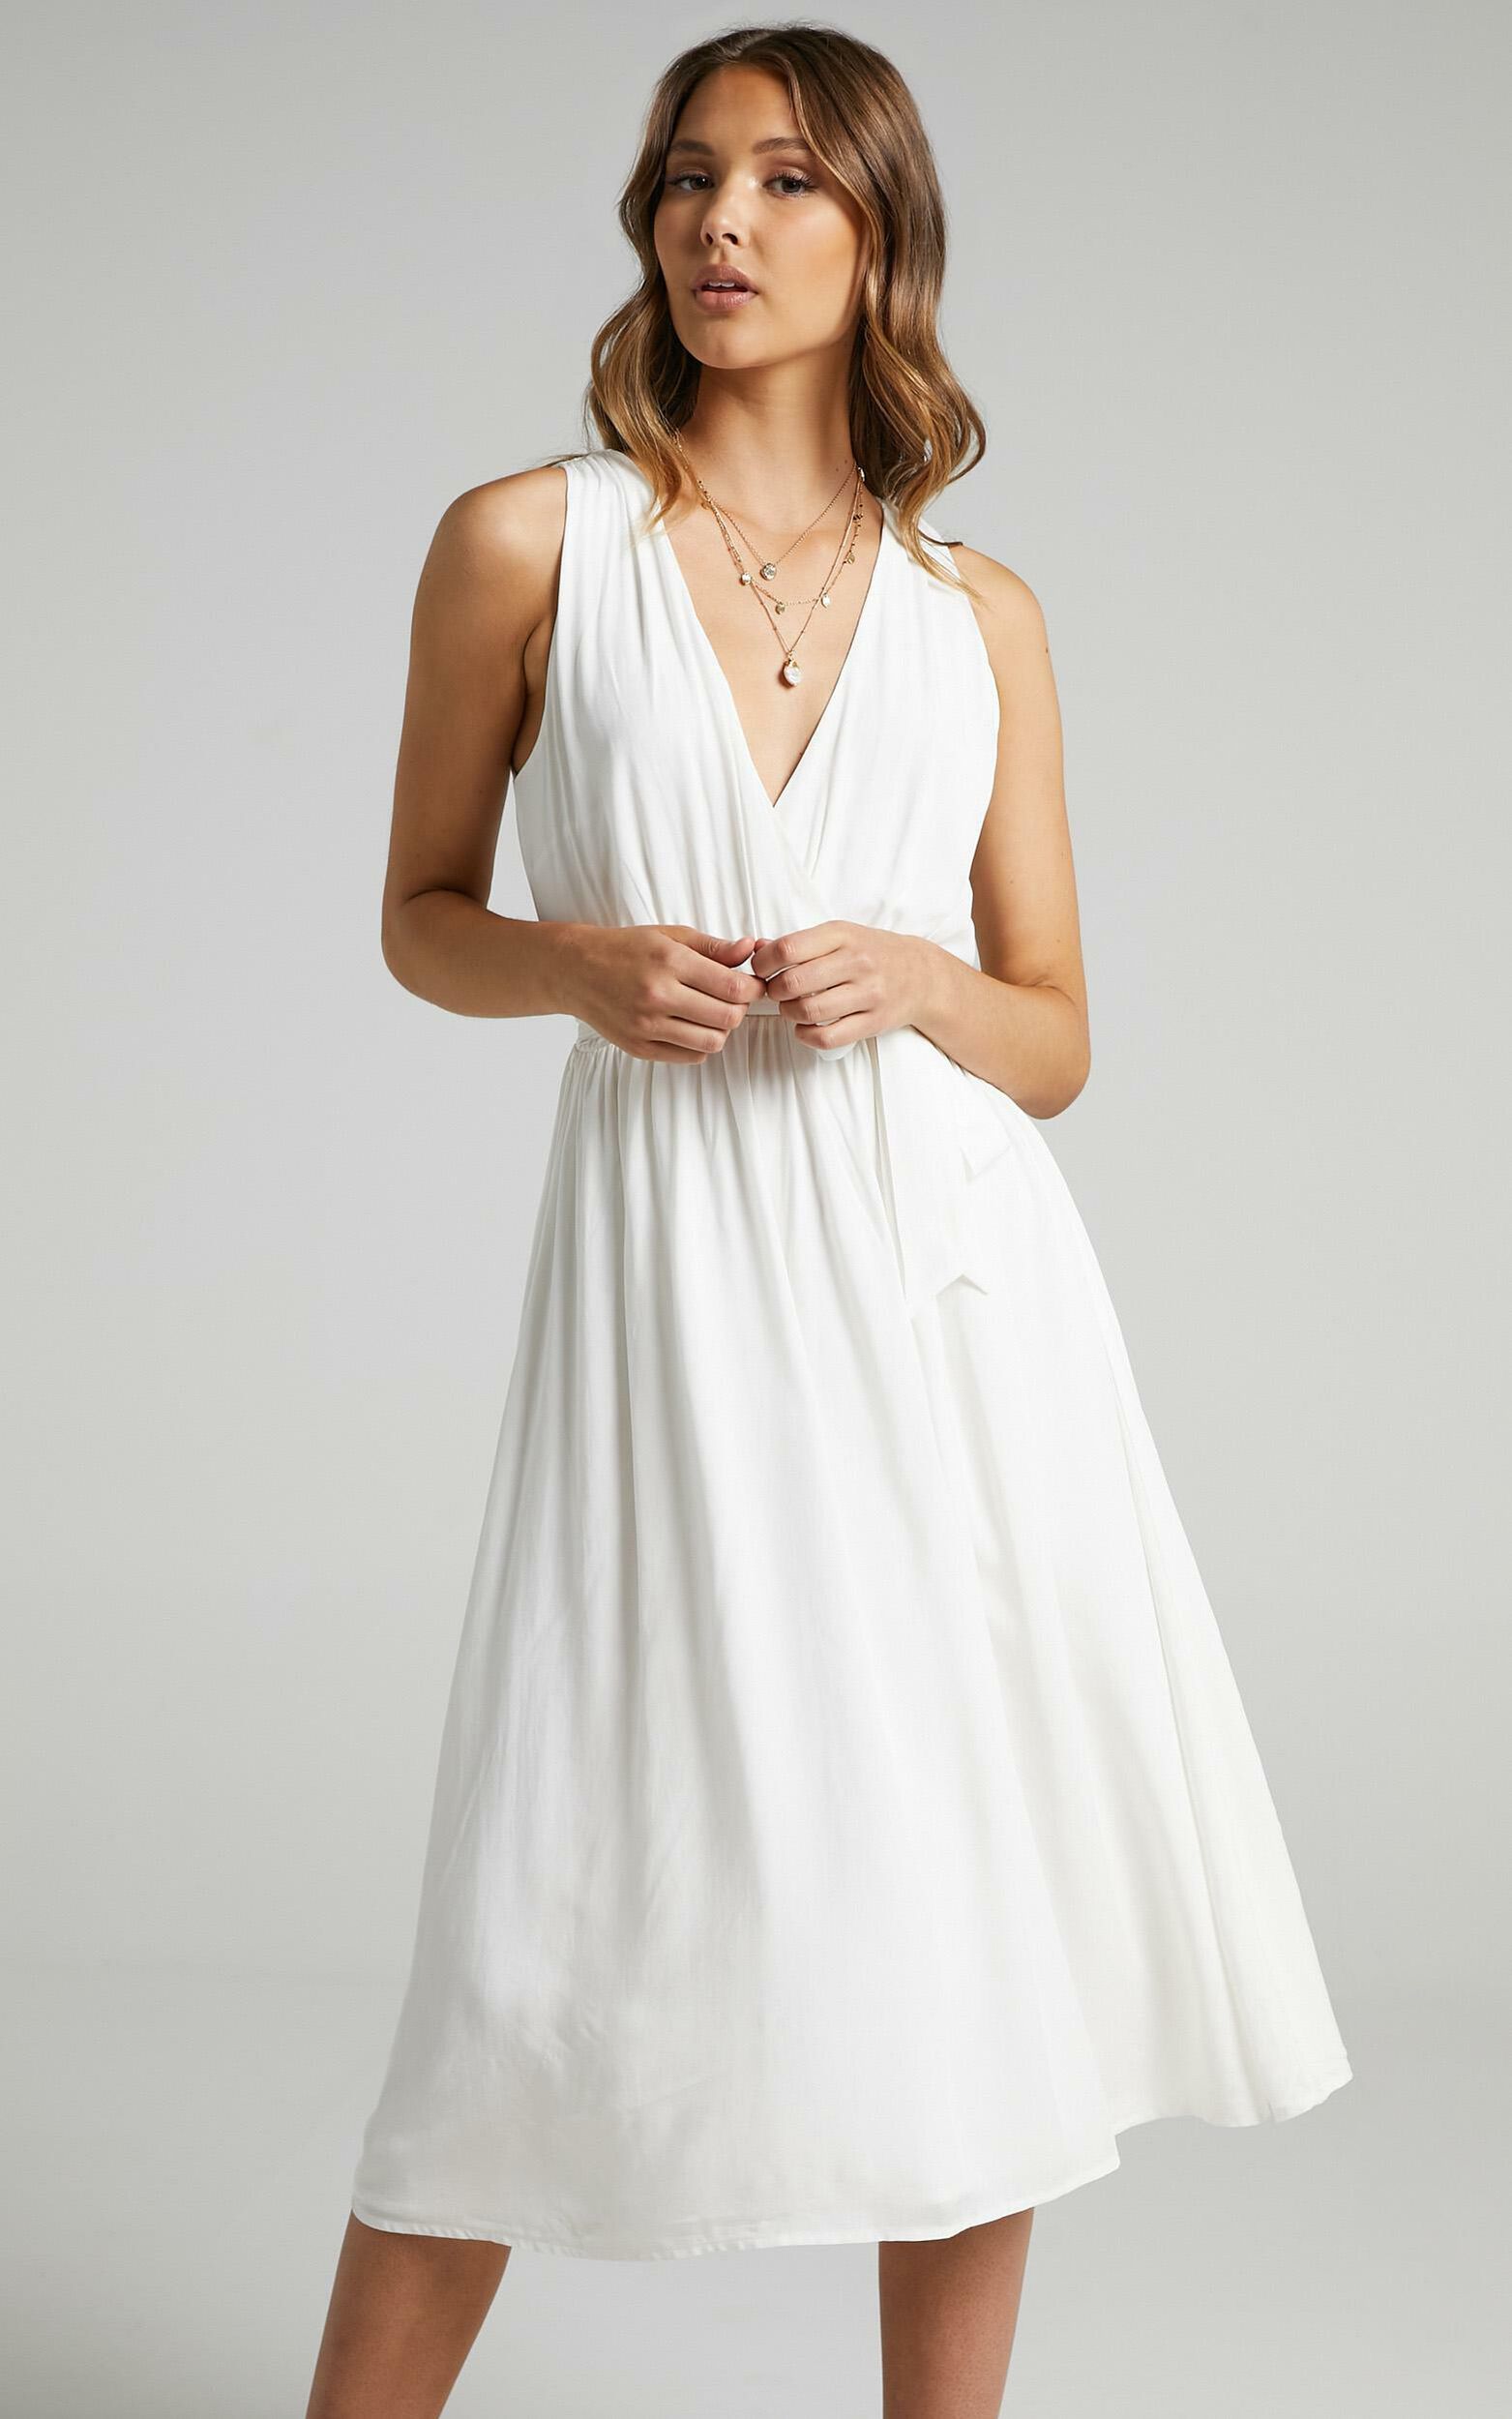 Arlais Dress in White | Showpo USA